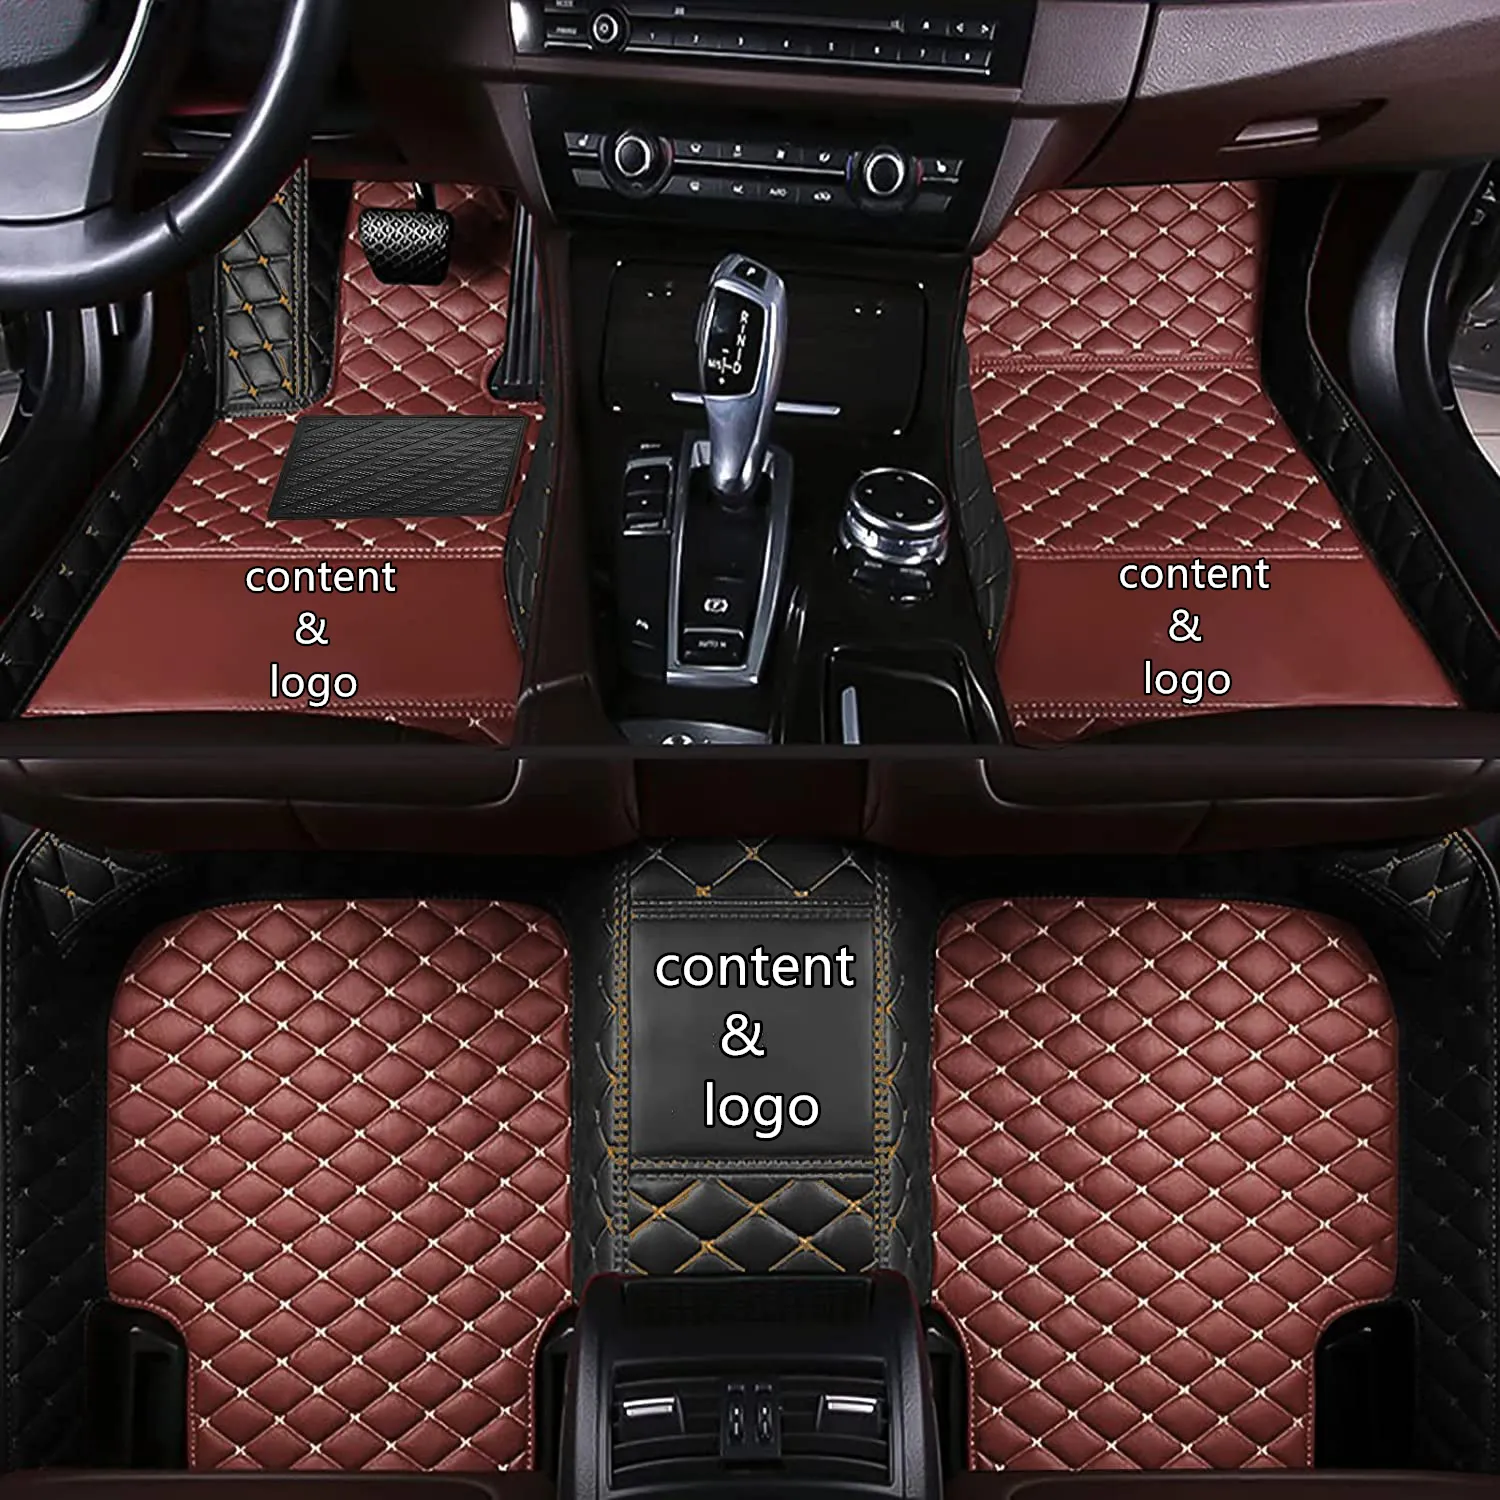 Adatto per tappetini per auto adatto per Lexus GS 2011 2010 2009 2008 tappeto impermeabile accessori per auto personalizzati parti interne prodotti di ricambio